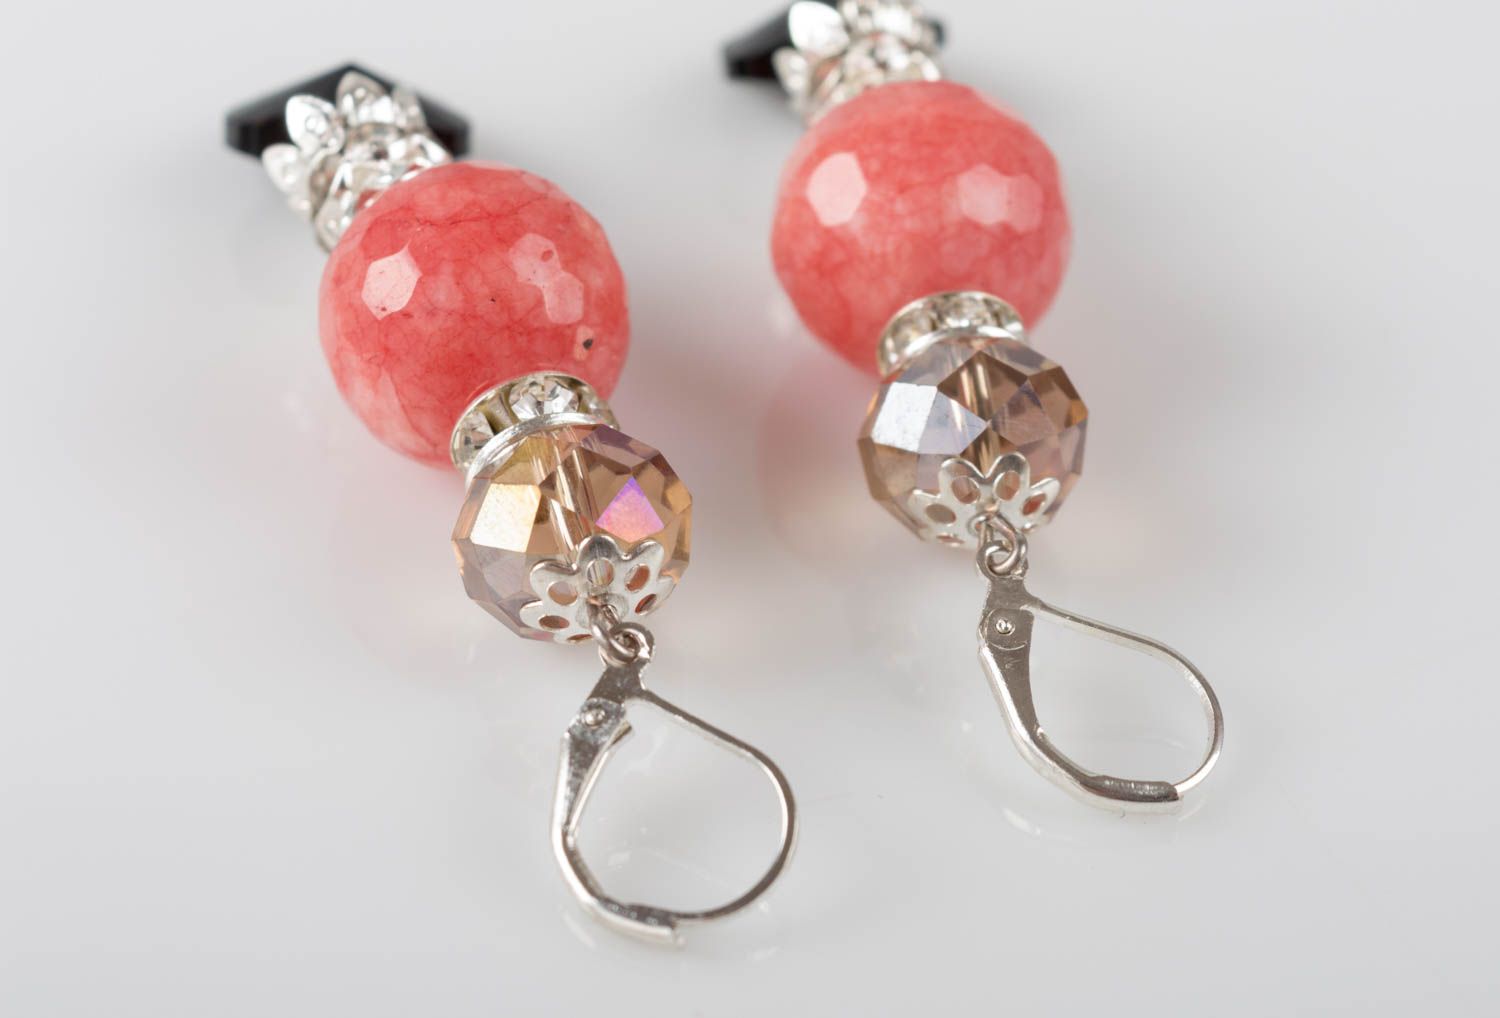 Unusual handmade gemstone earrings designer crystal earrings gifts for her photo 3